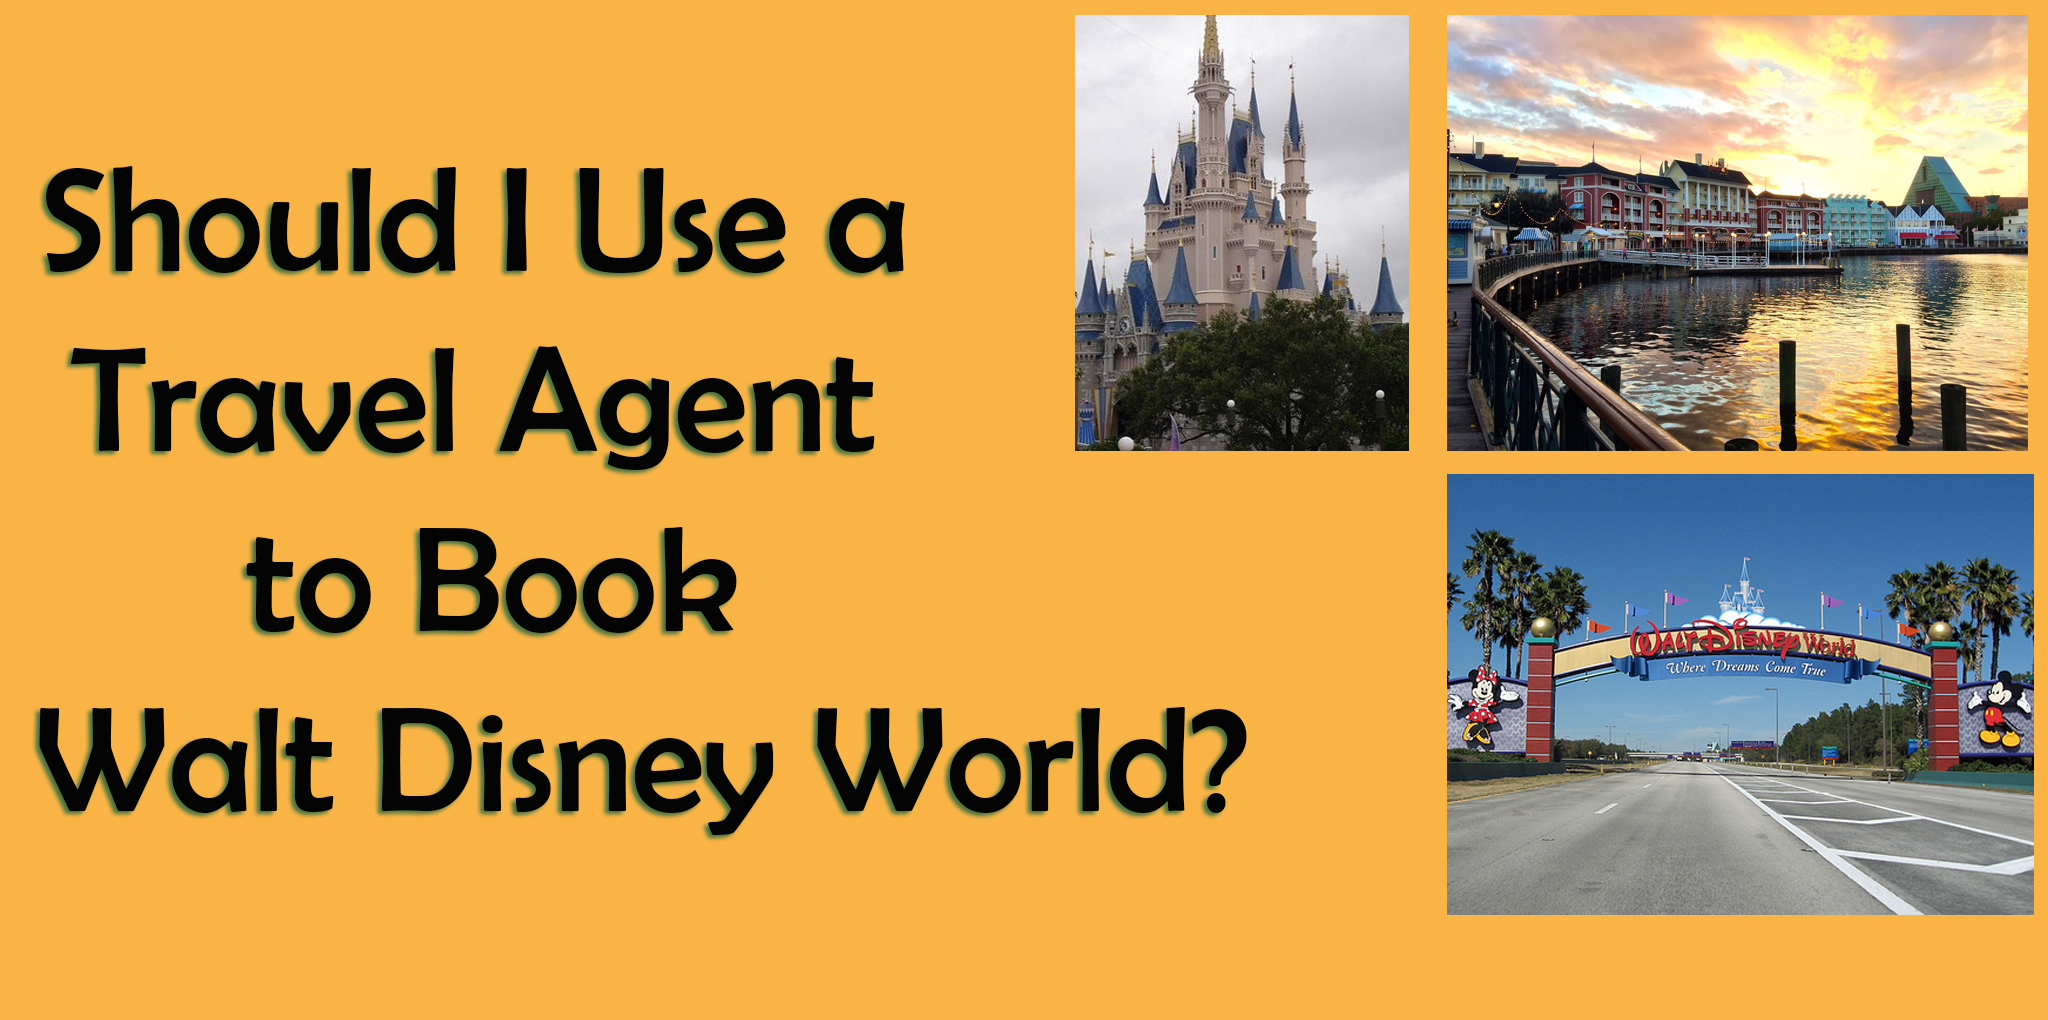 Should I use a Travel Agent or Book My Disney World Trip Myself? - Walt